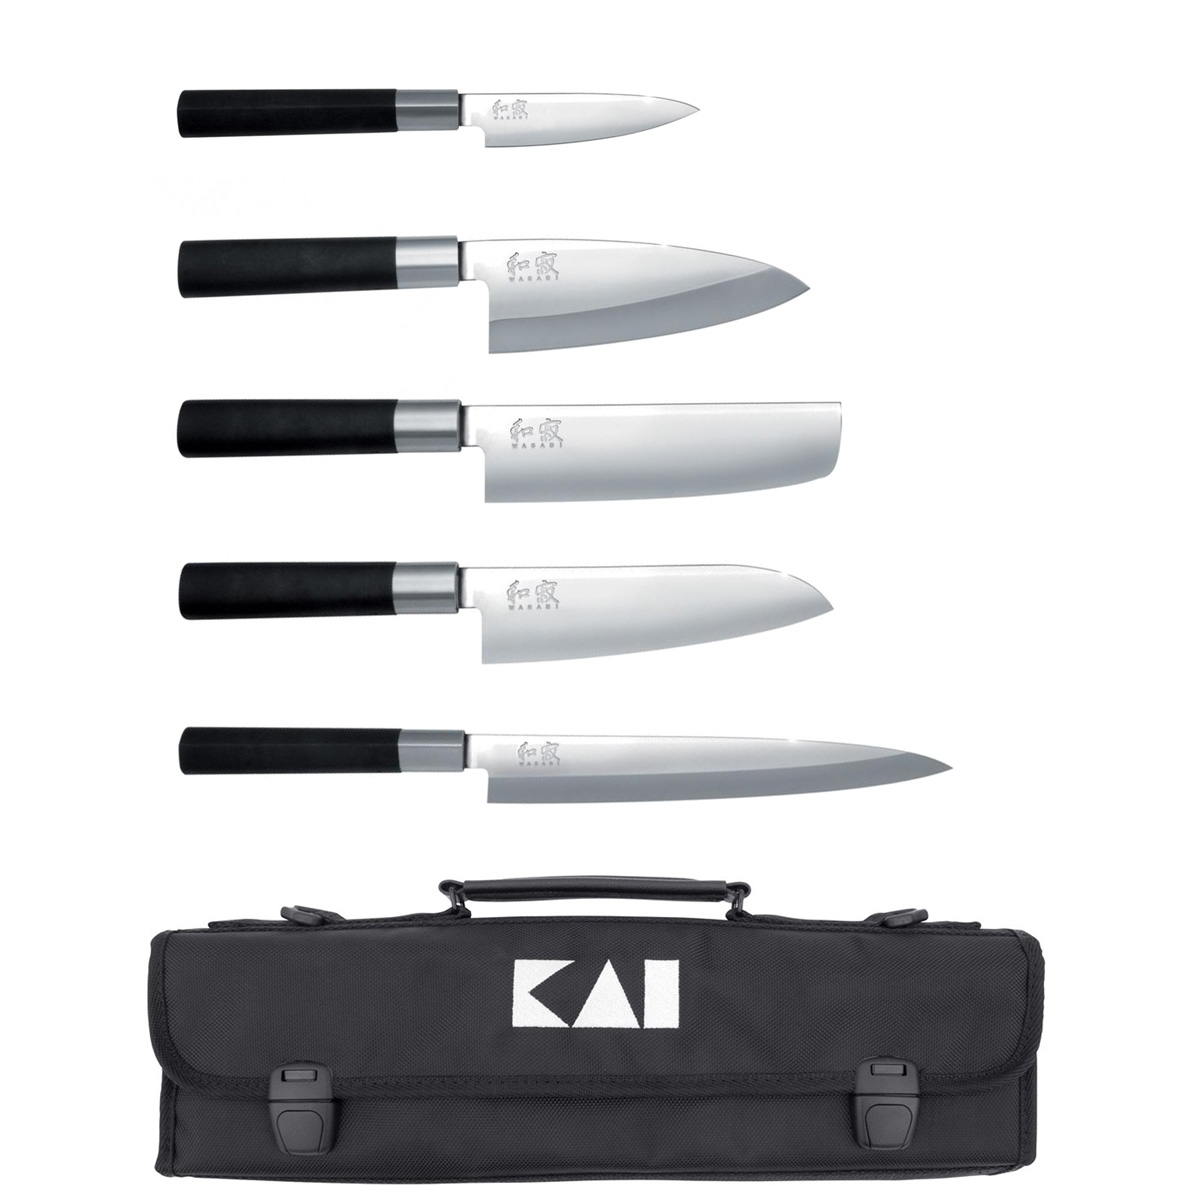 KAI Wasabi Black Messerset Japan - 5 Messer mit Messertasche / Griff aus Kunststoff